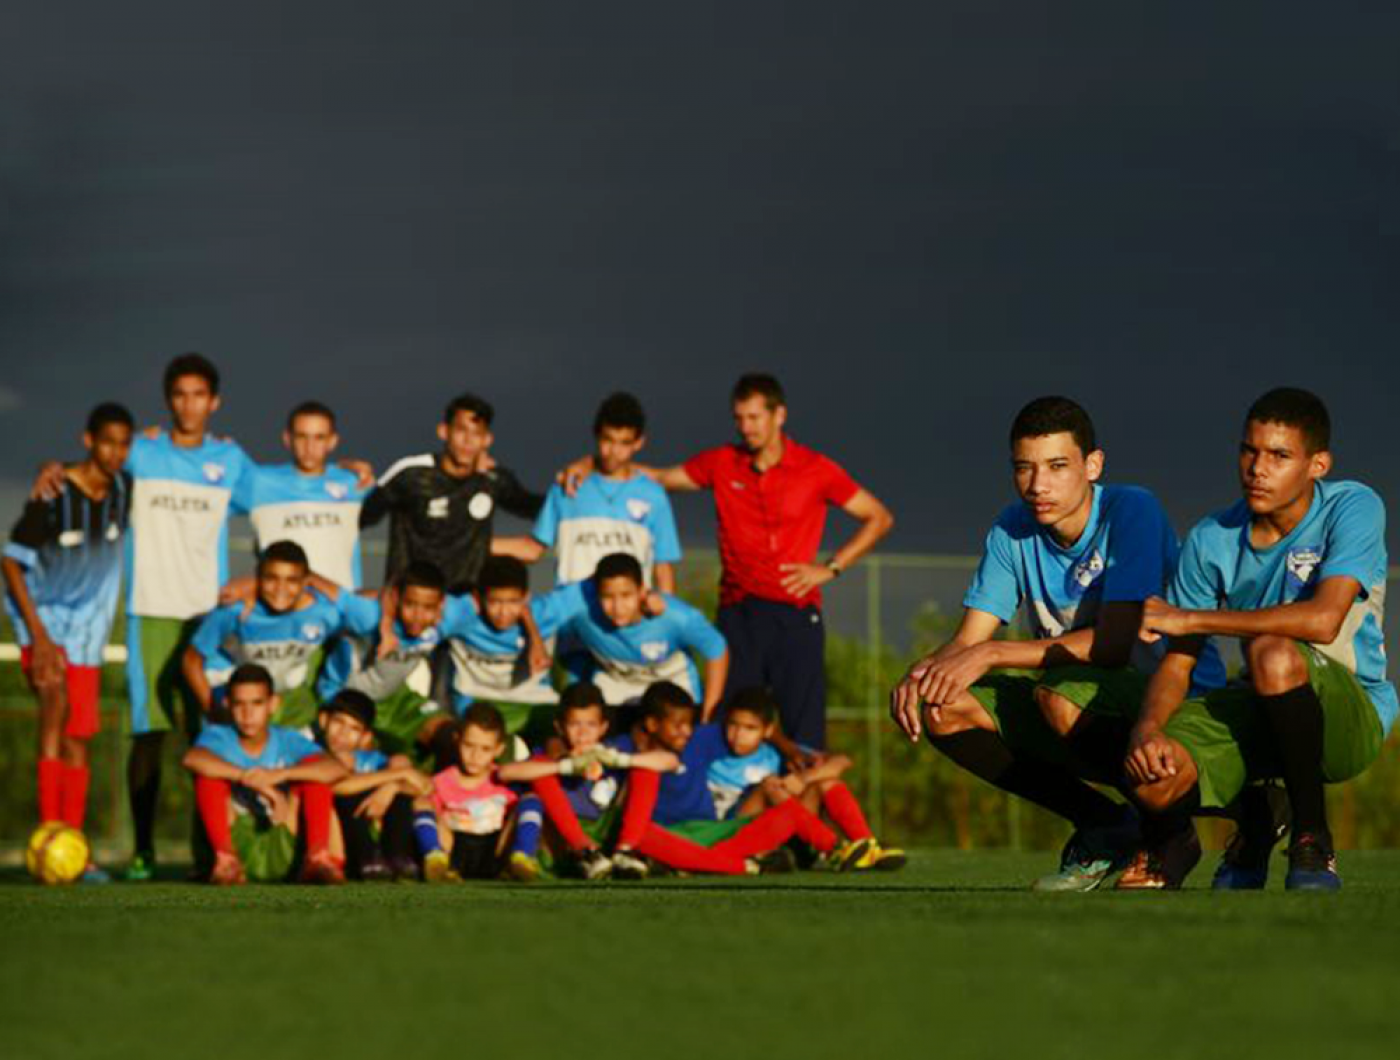 Varjão Futebol Clube – Distrito Federal